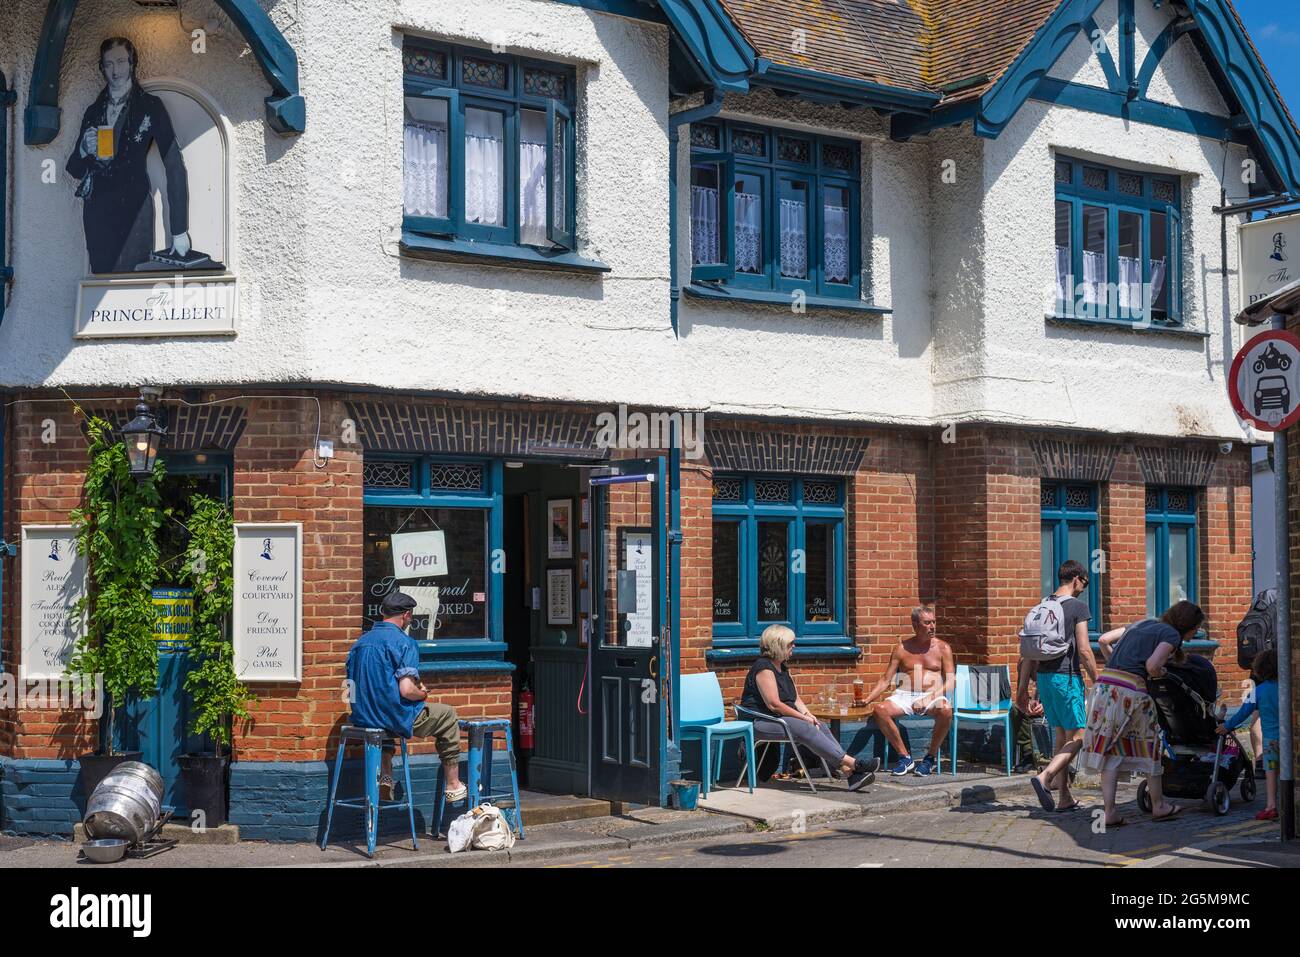 Les gens qui apprécient un verre assis à l'extérieur du pub Prince Albert dans un chaud, ensoleillé, samedi après-midi. Whitstable, Kent, Angleterre, Royaume-Uni Banque D'Images